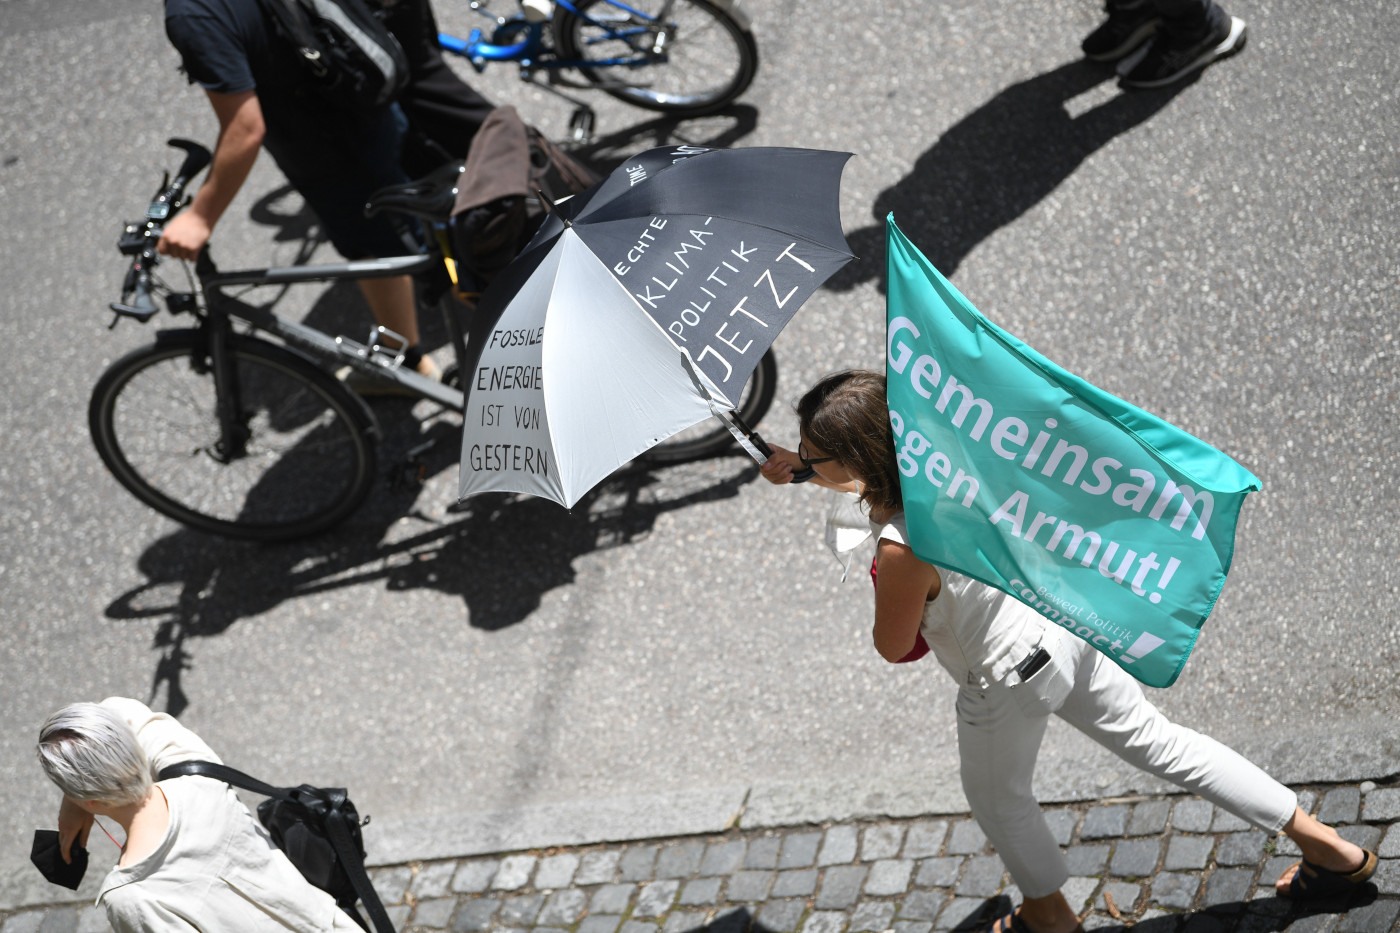 Eine Aufnahme bei der G7-Demo 2022: Eine Frau hält einen Regenschirm mit der Aufschrift "Echte Klimapolitik jetzt!" und eine Campact-Flagge, auf der steht "Gemeinsam gegen Armut"